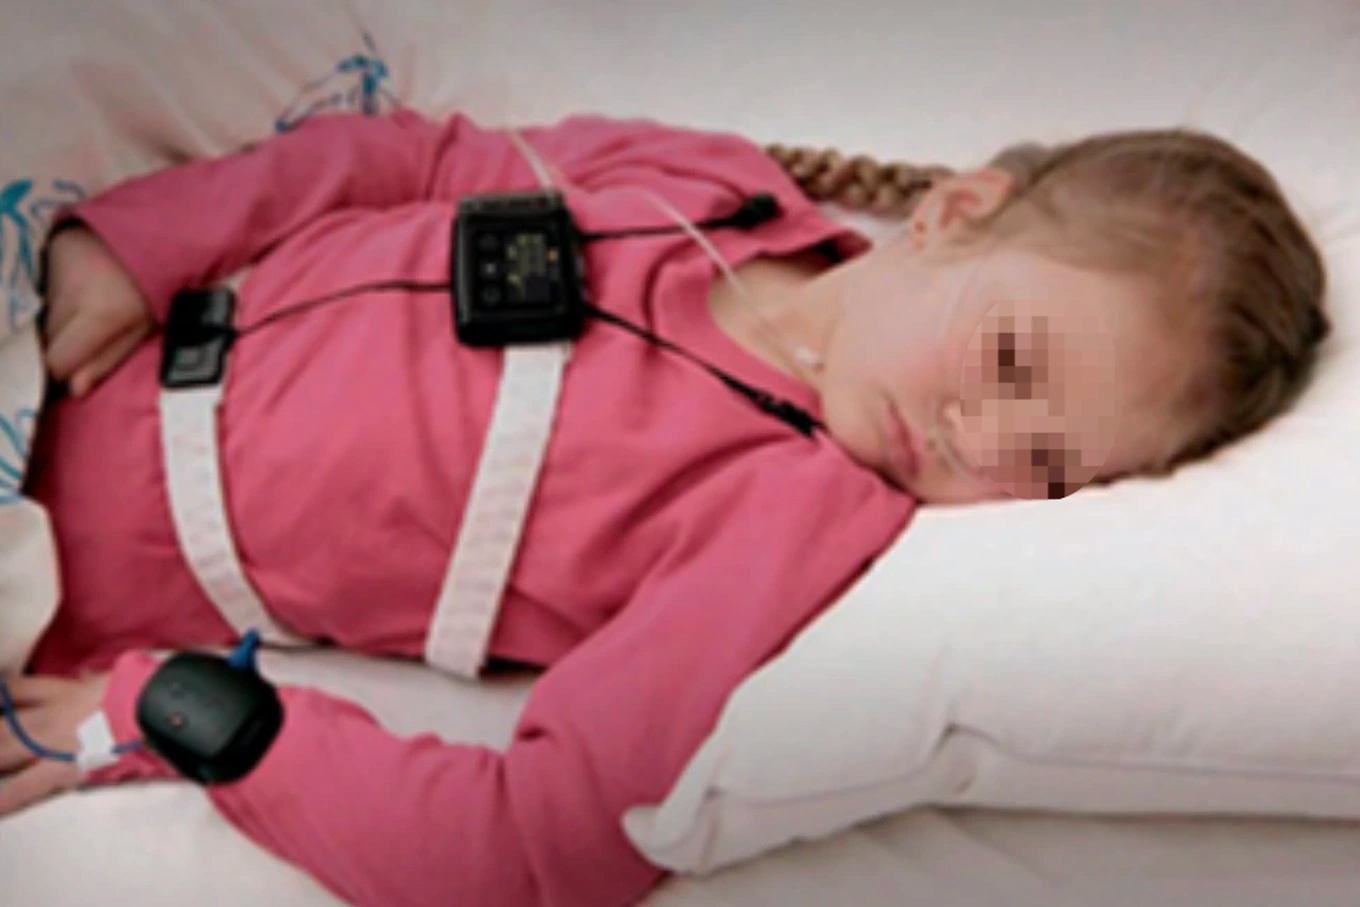 Cha mẹ chú ý căn bệnh ngưng thở lúc ngủ ở trẻ, di chứng rất nghiêm trọng-3